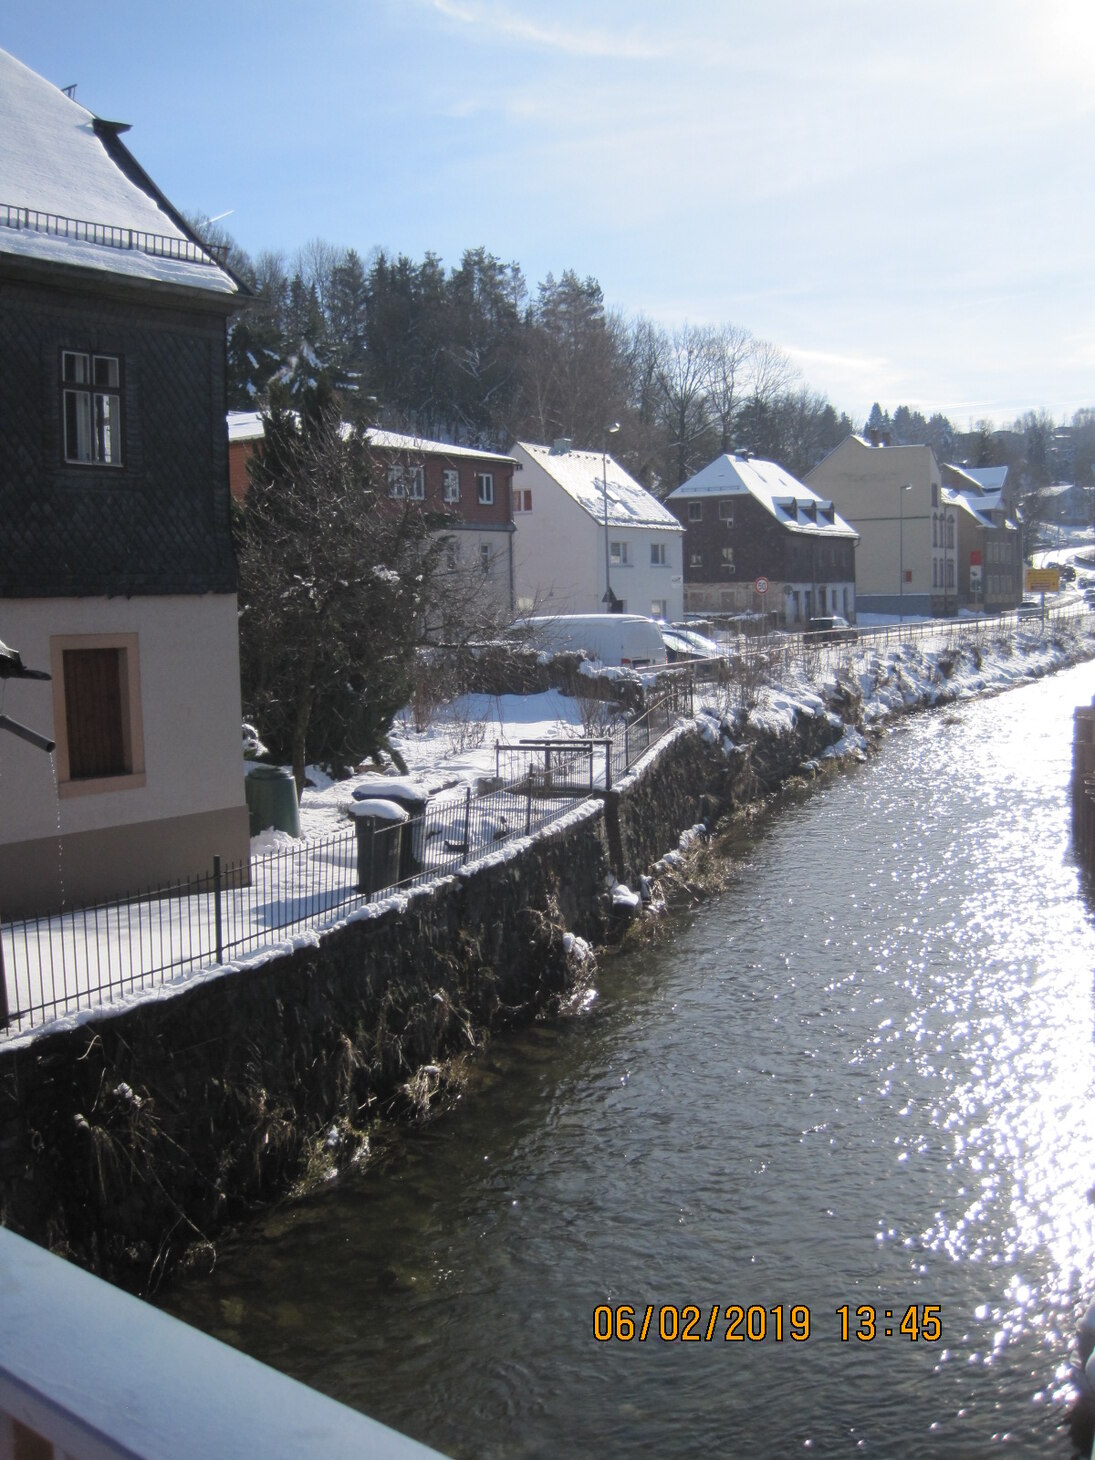 Blick auf Fluss mit angrenzenden Häusern, die schneebedeckt sind